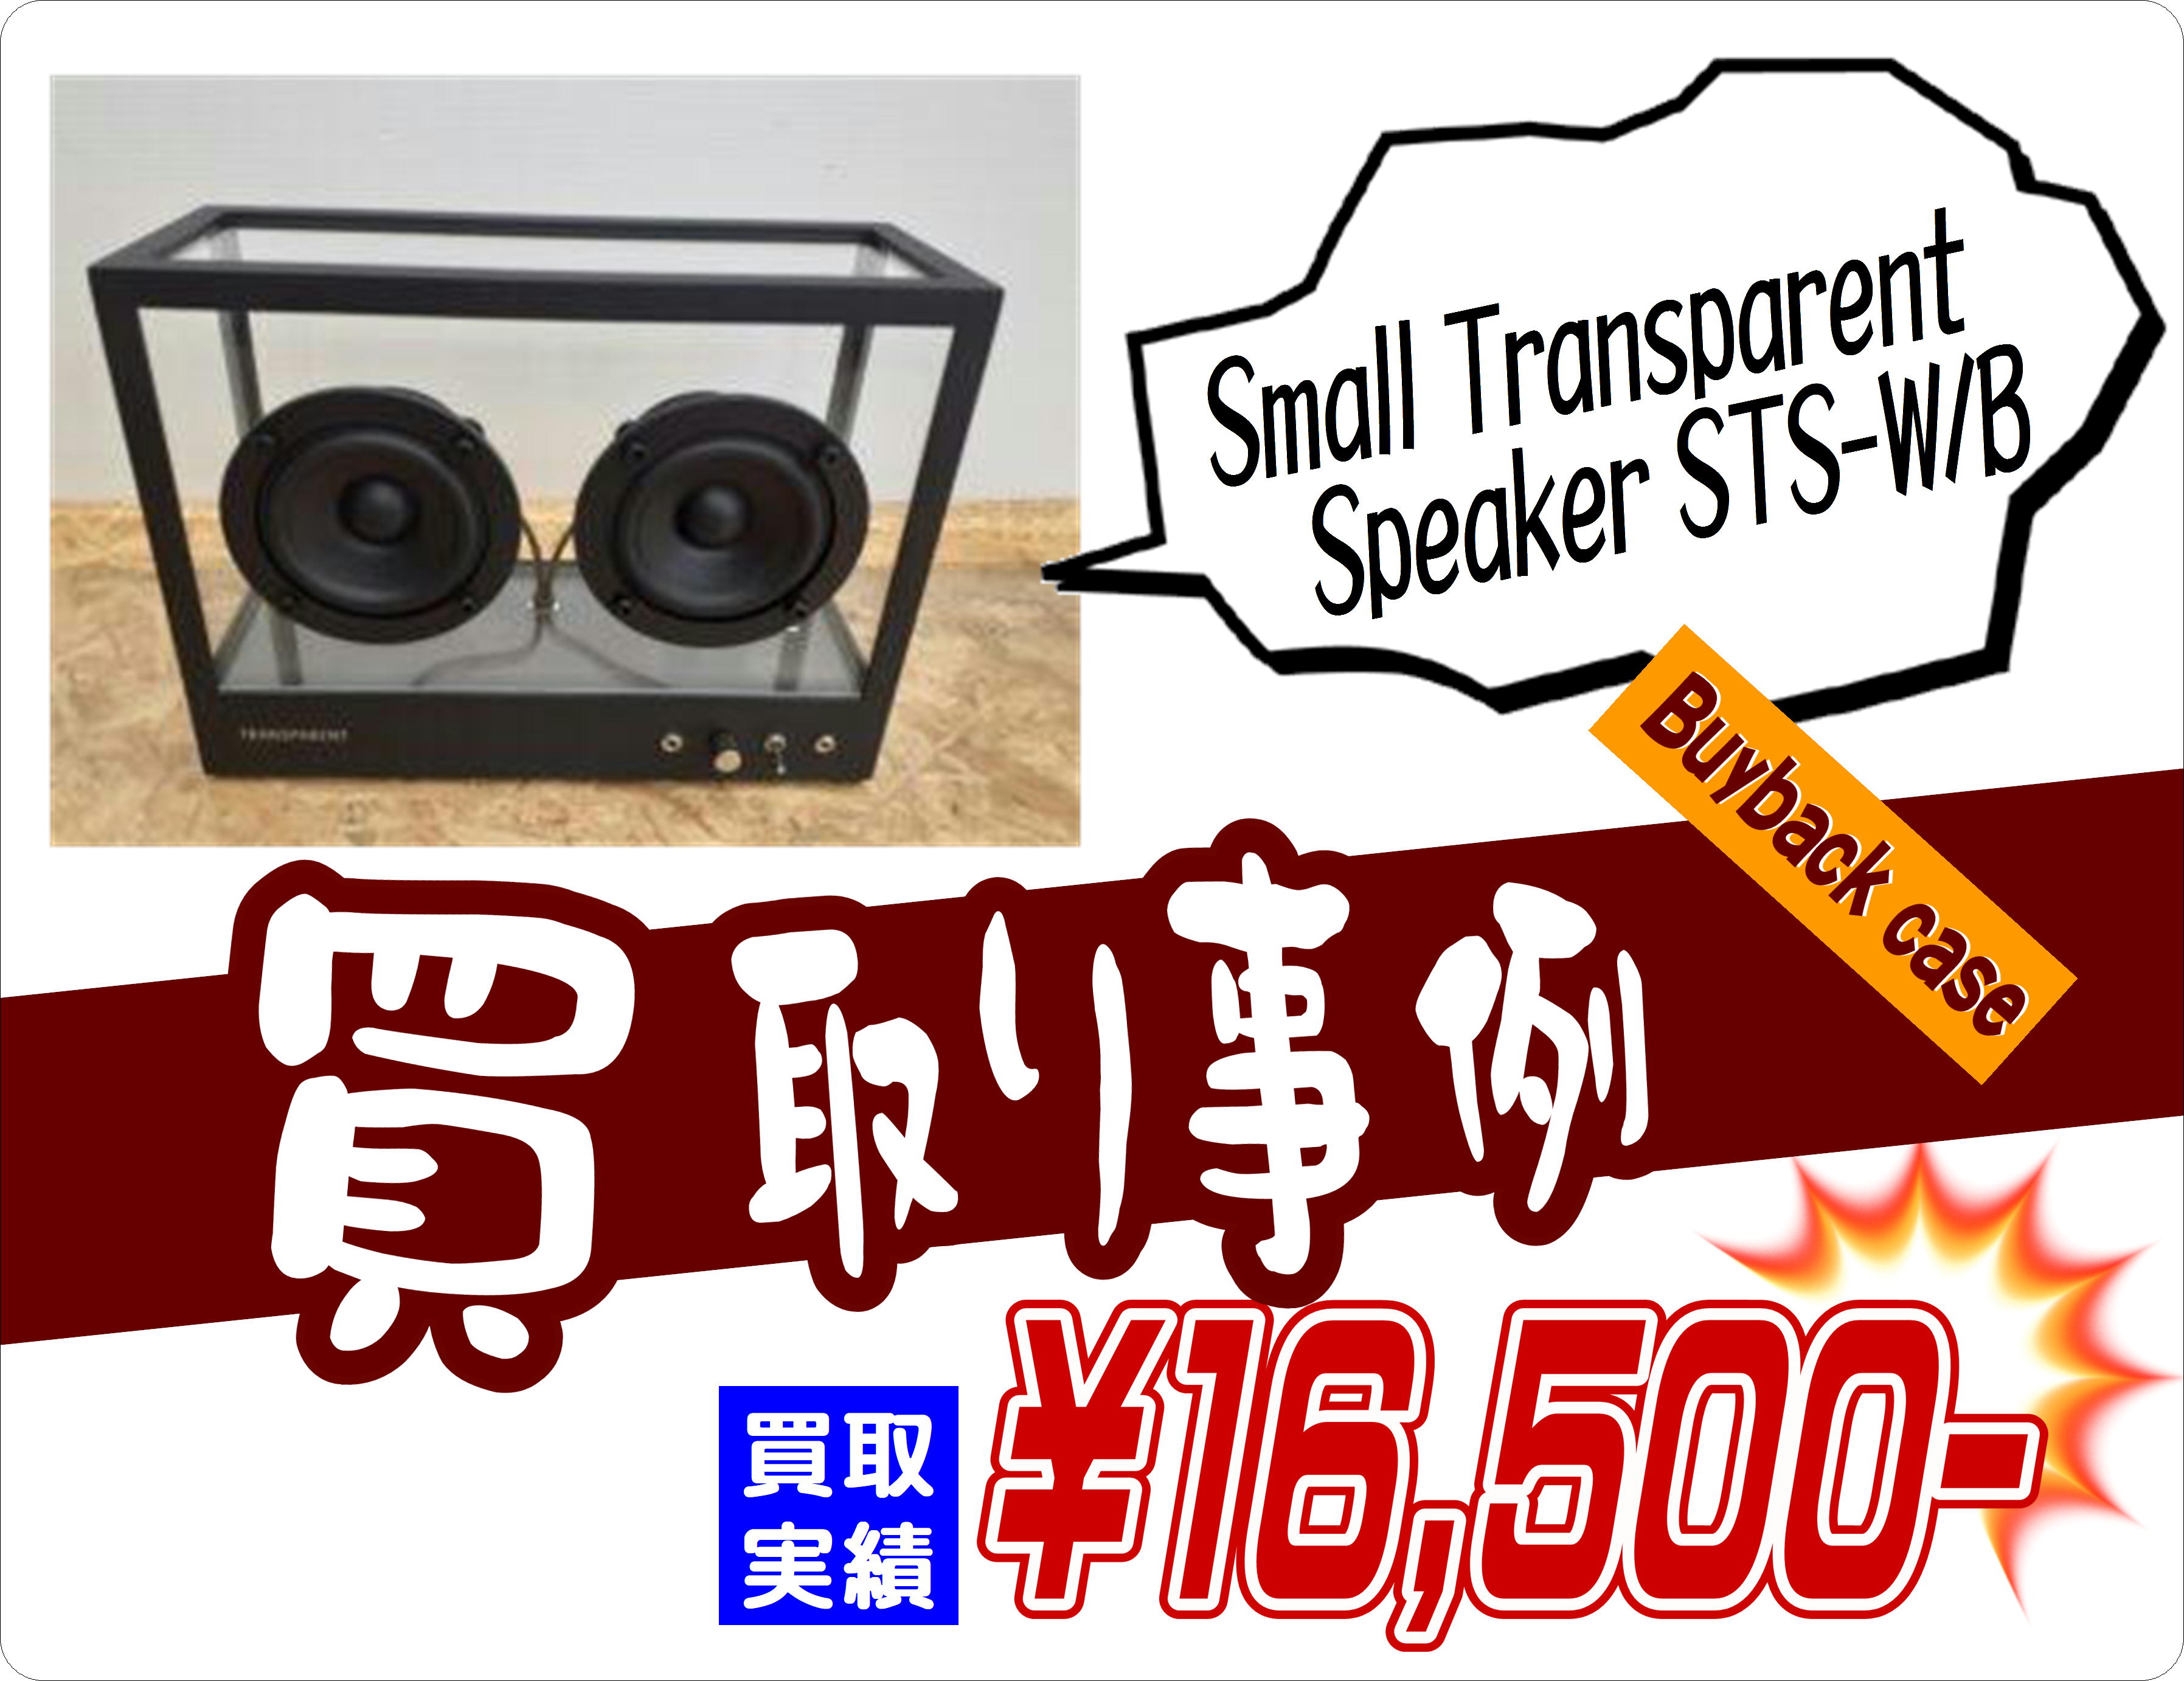 Small Transparent Speaker STS-W B